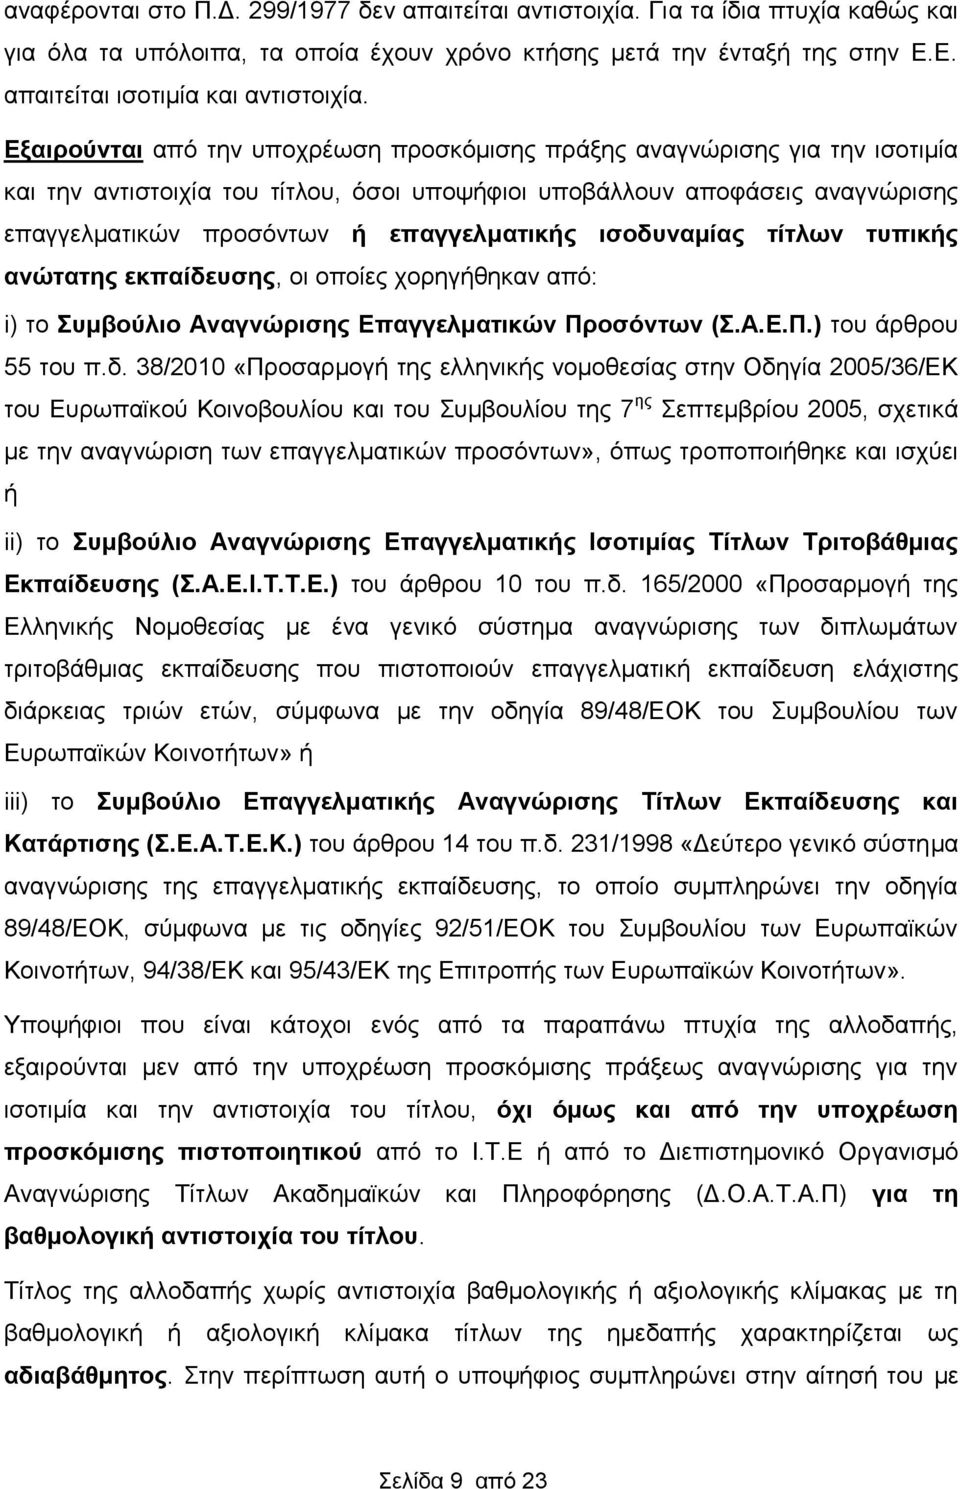 ισοδυναμίας τίτλων τυπικής ανώτατης εκπαίδευσης, οι οποίες χορηγήθηκαν από: i) το Συμβούλιο Αναγνώρισης Επαγγελματικών Προσόντων (Σ.Α.Ε.Π.) του άρθρου 55 του π.δ. 38/2010 «Προσαρμογή της ελληνικής